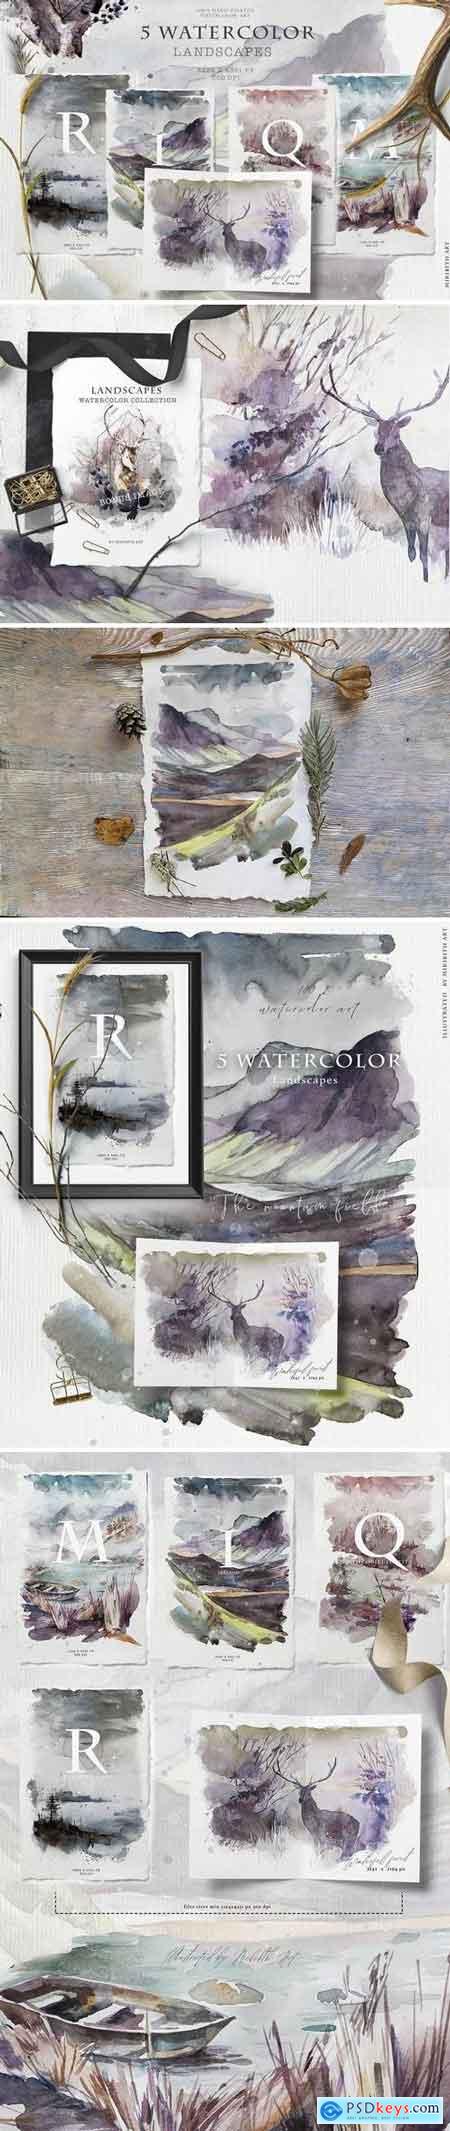 Landscapes watercolor